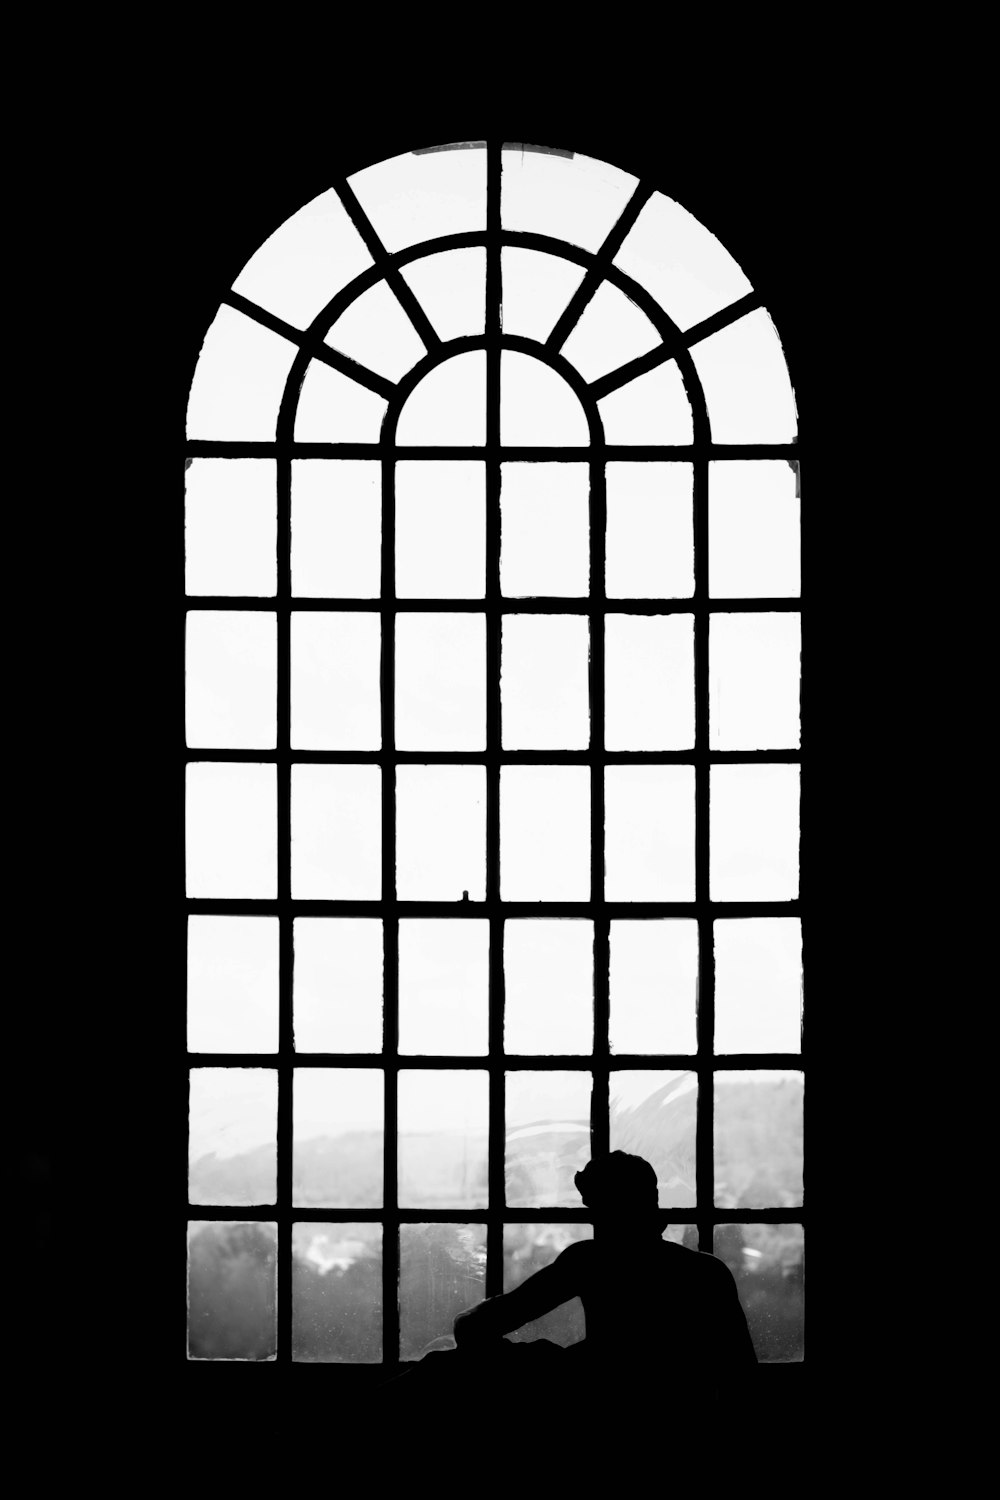 eine Person, die in einem Fenster sitzt